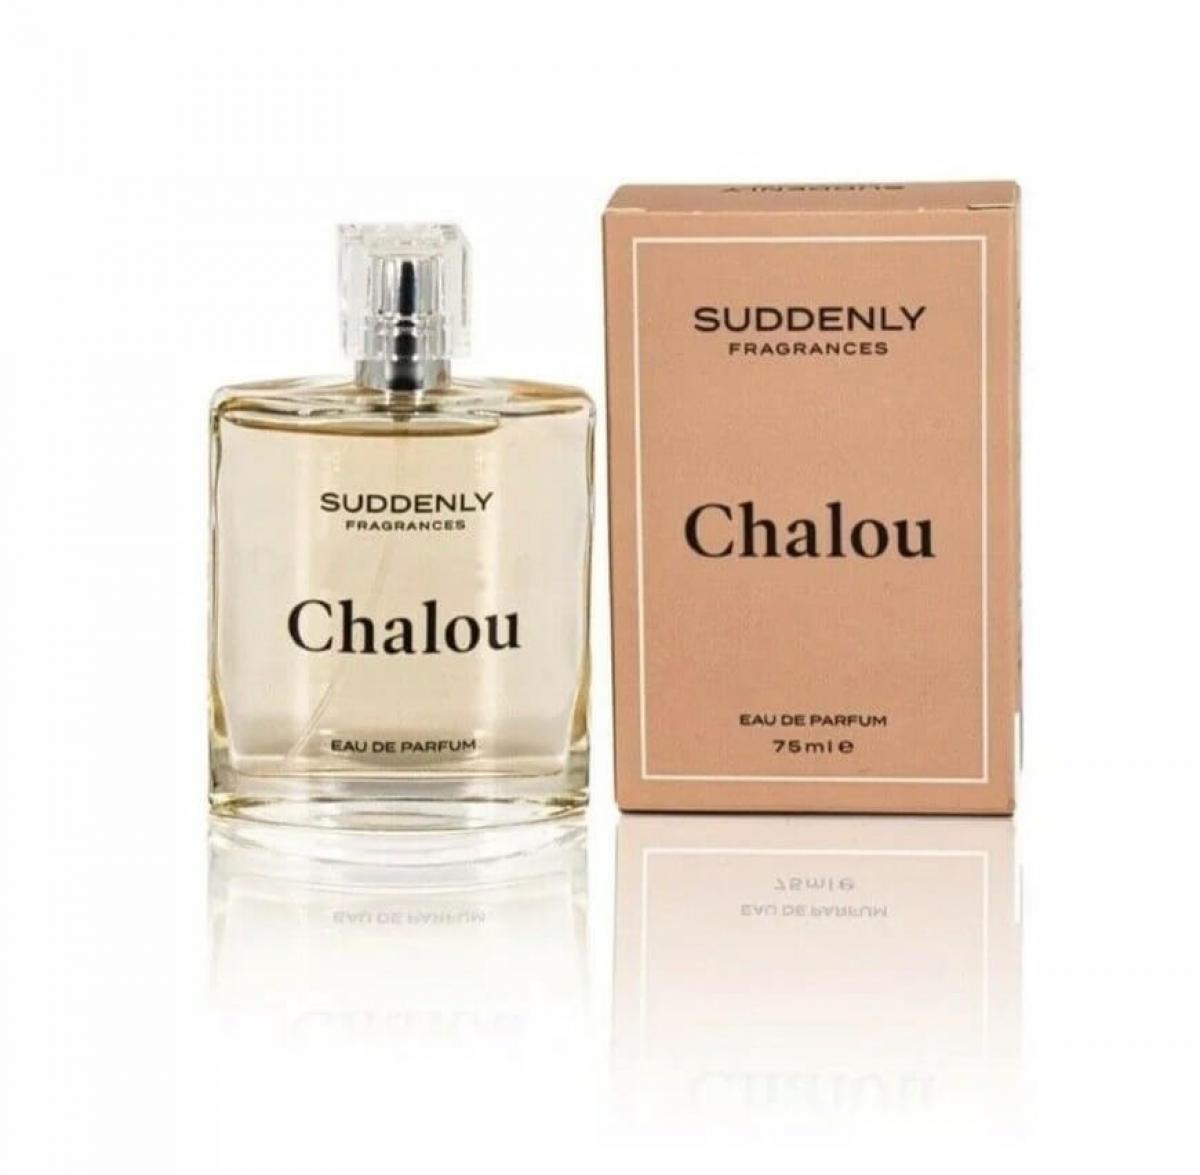 Suddenly Chalou Eau de Parfum